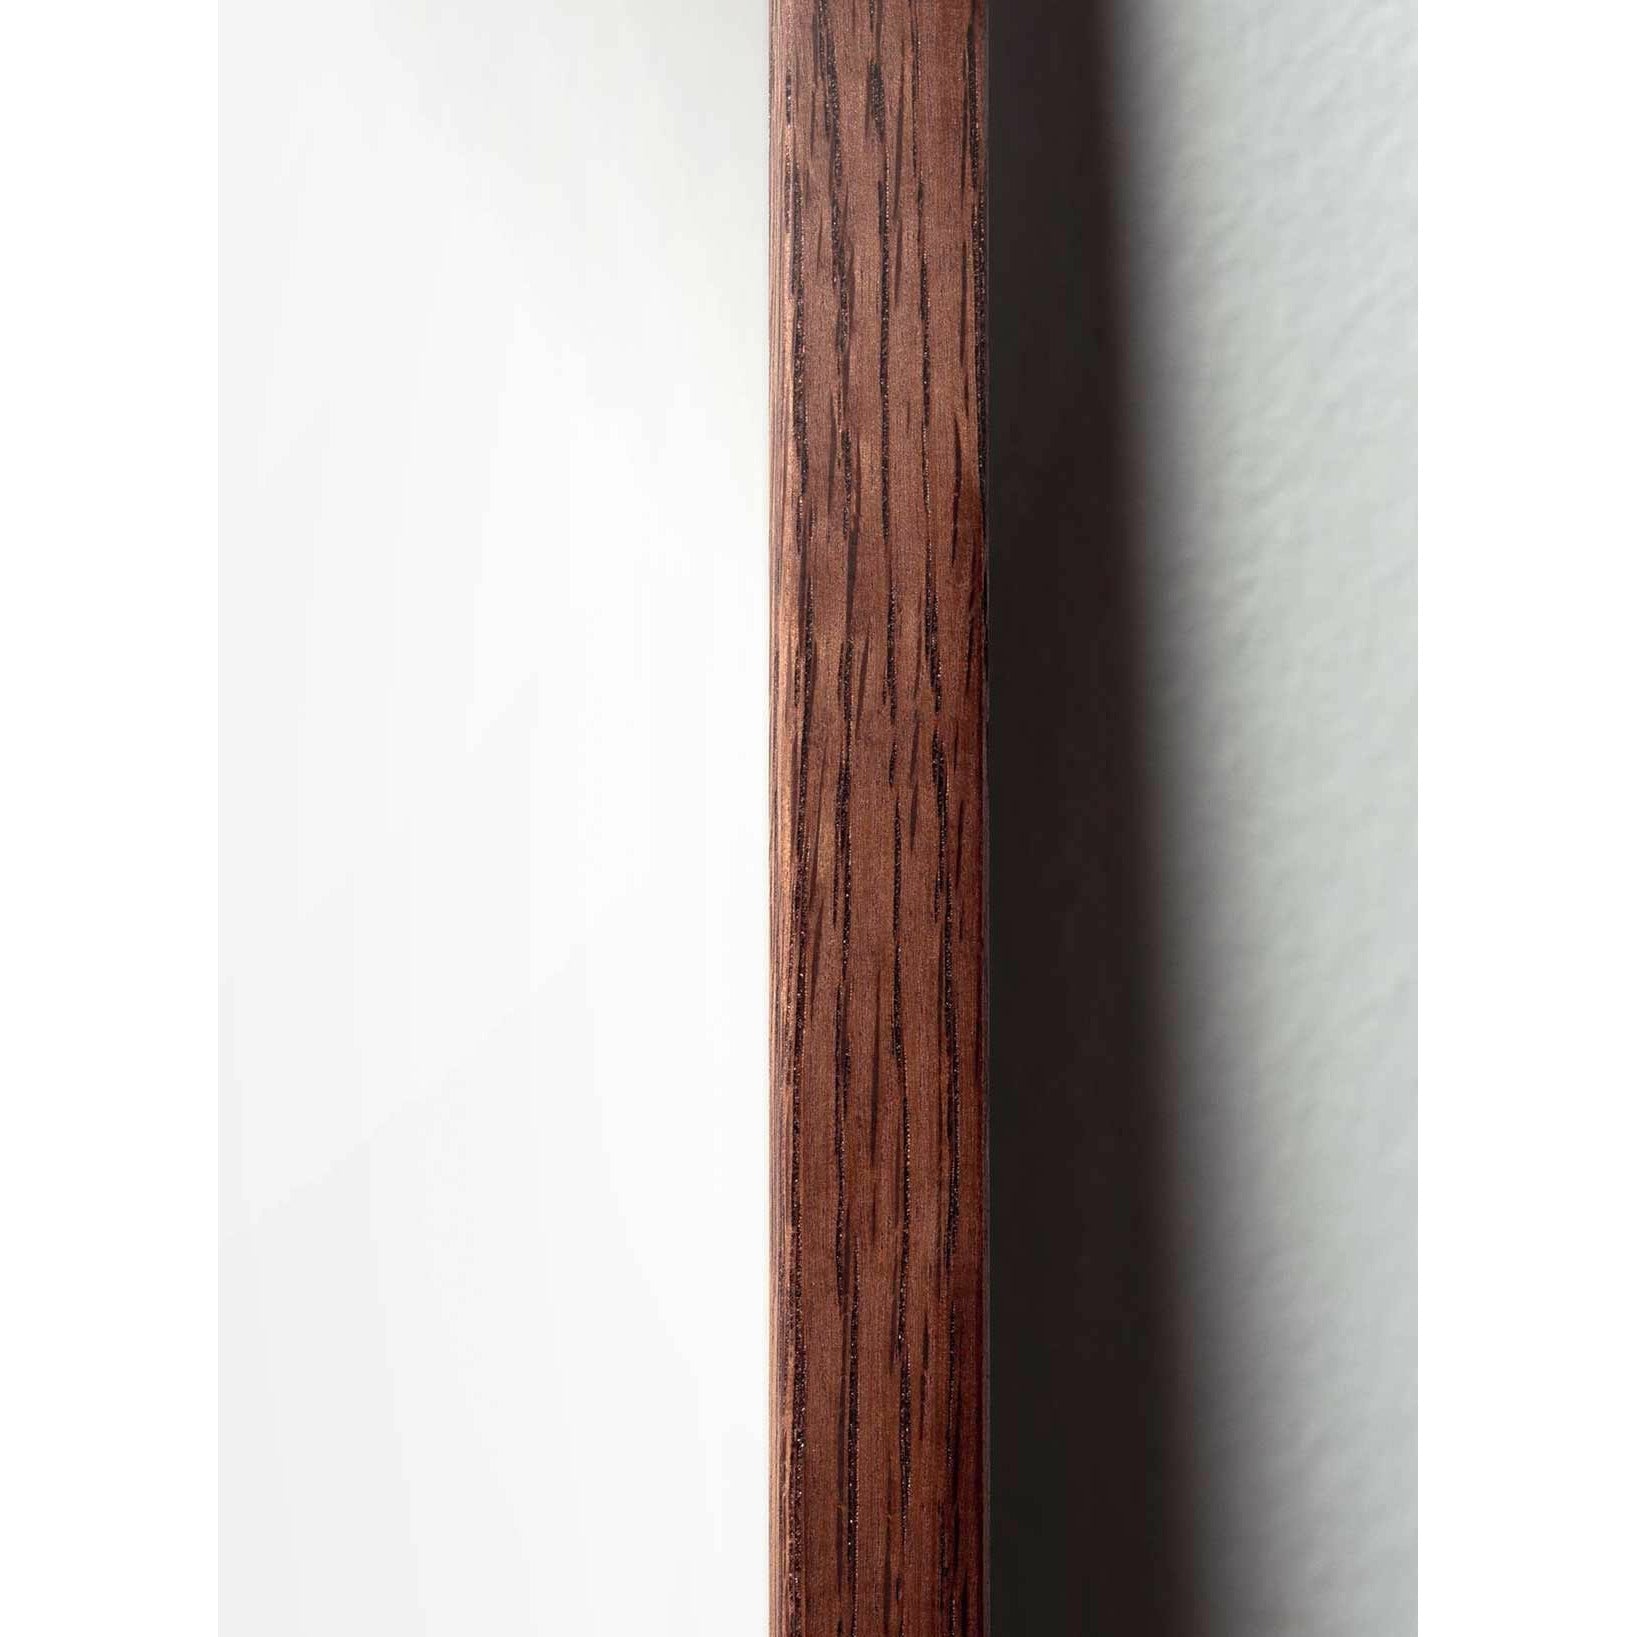 brainchild Munahahmot juliste, tummapuusta valmistettu runko 30x40 cm, ruskea